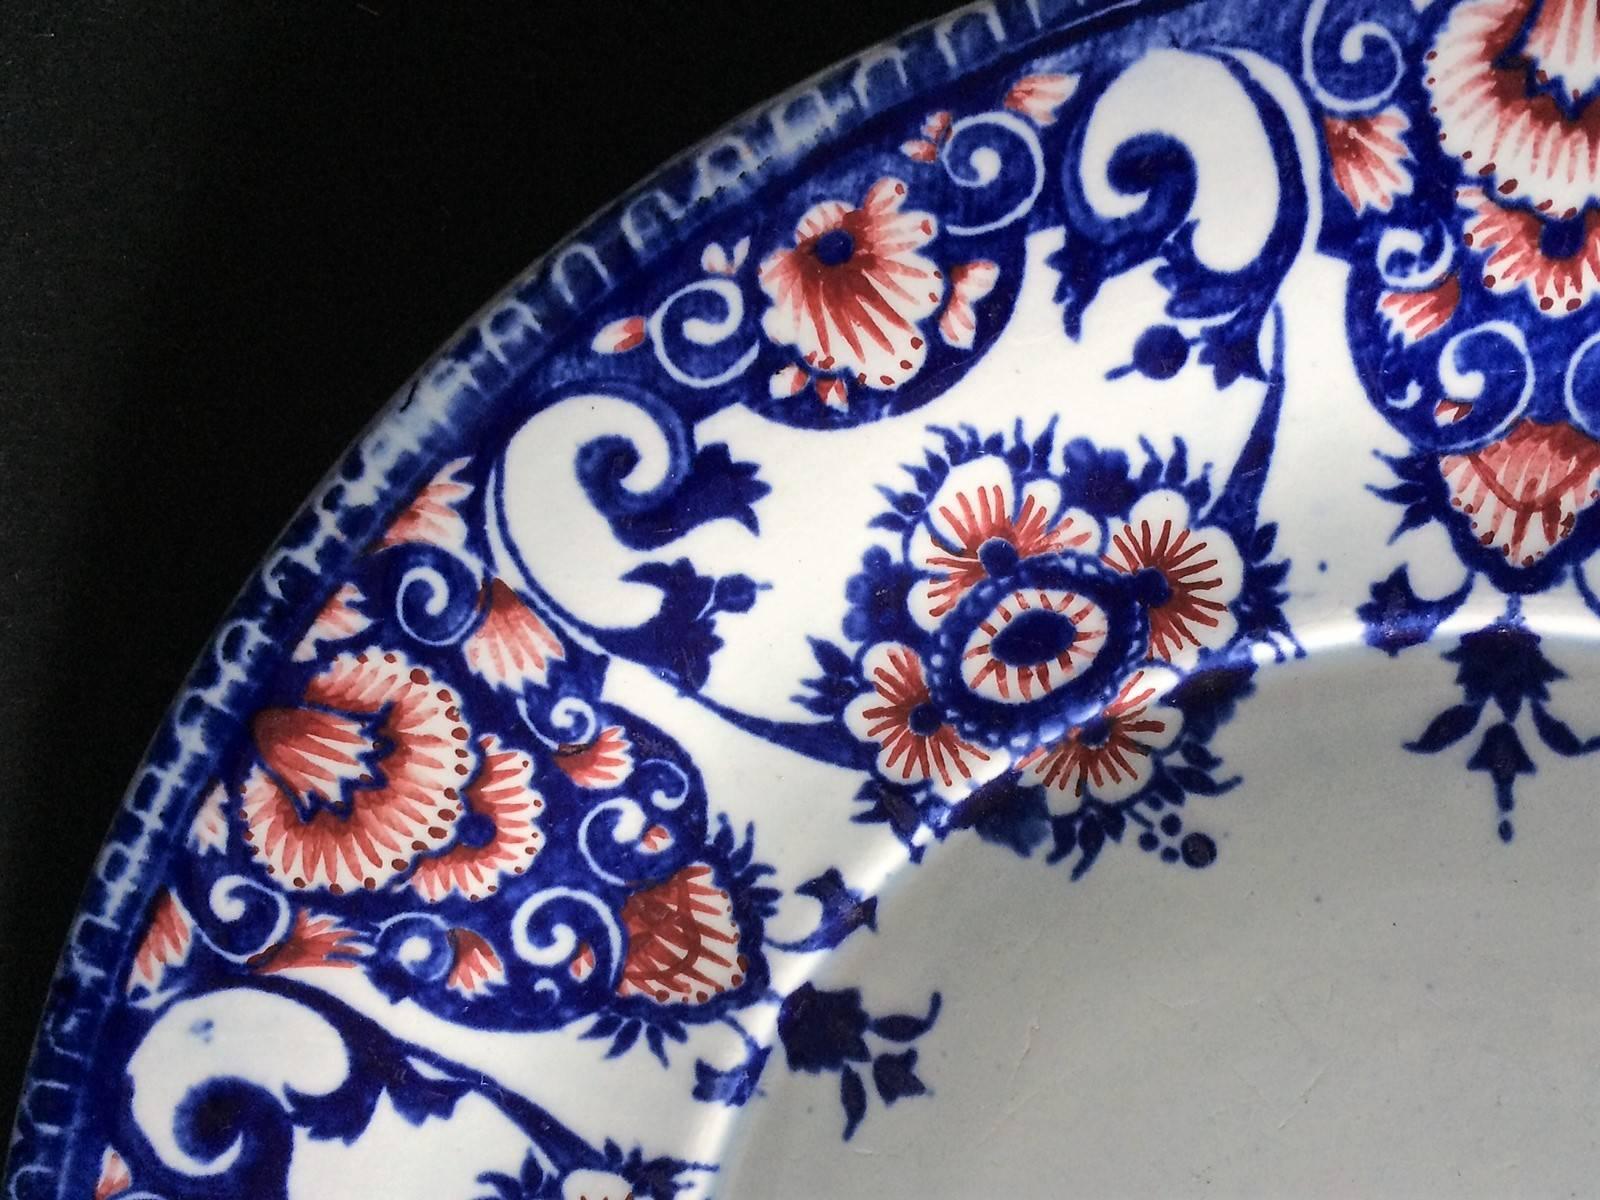 Dekorativer Steingutteller aus Gien, verziert mit blauen und roten stilisierten Blumenmotiven auf weißem Grund.
Stempel der Manufaktur von Gien auf der Rückseite des Tellers.